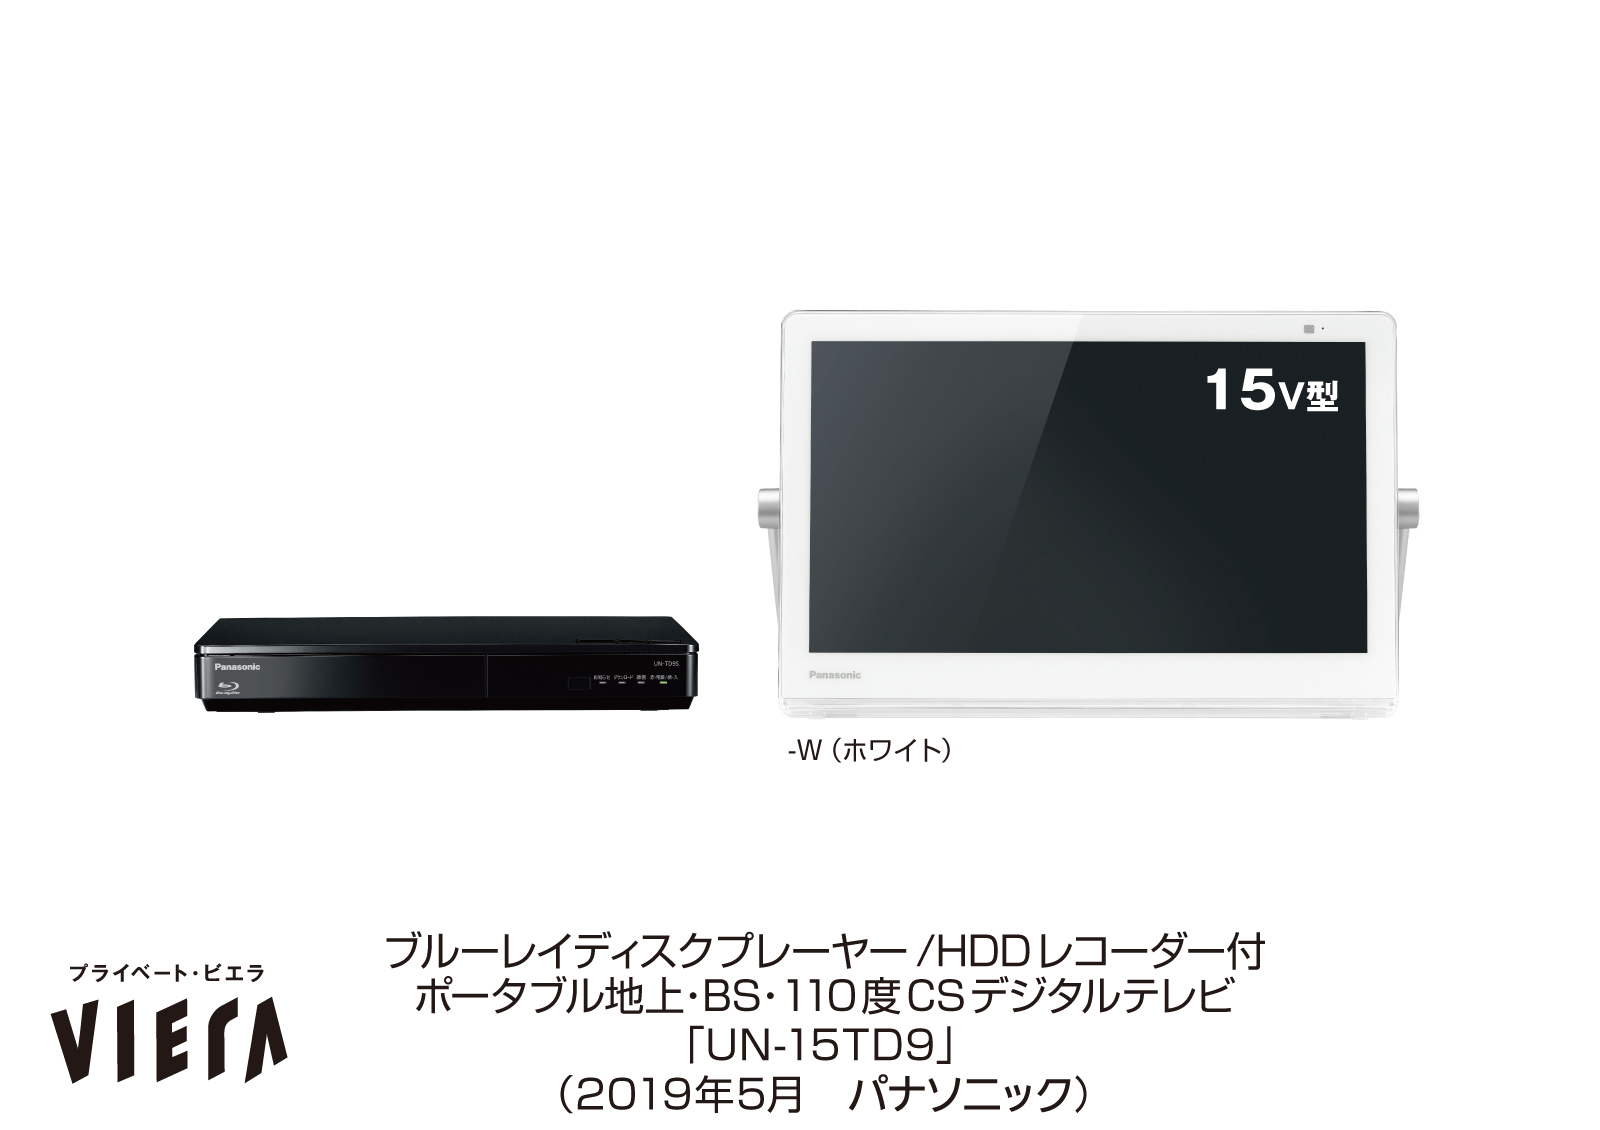 Panasonic プライベート・ビエラ UN-15TD7-W テレビ - PC周辺機器